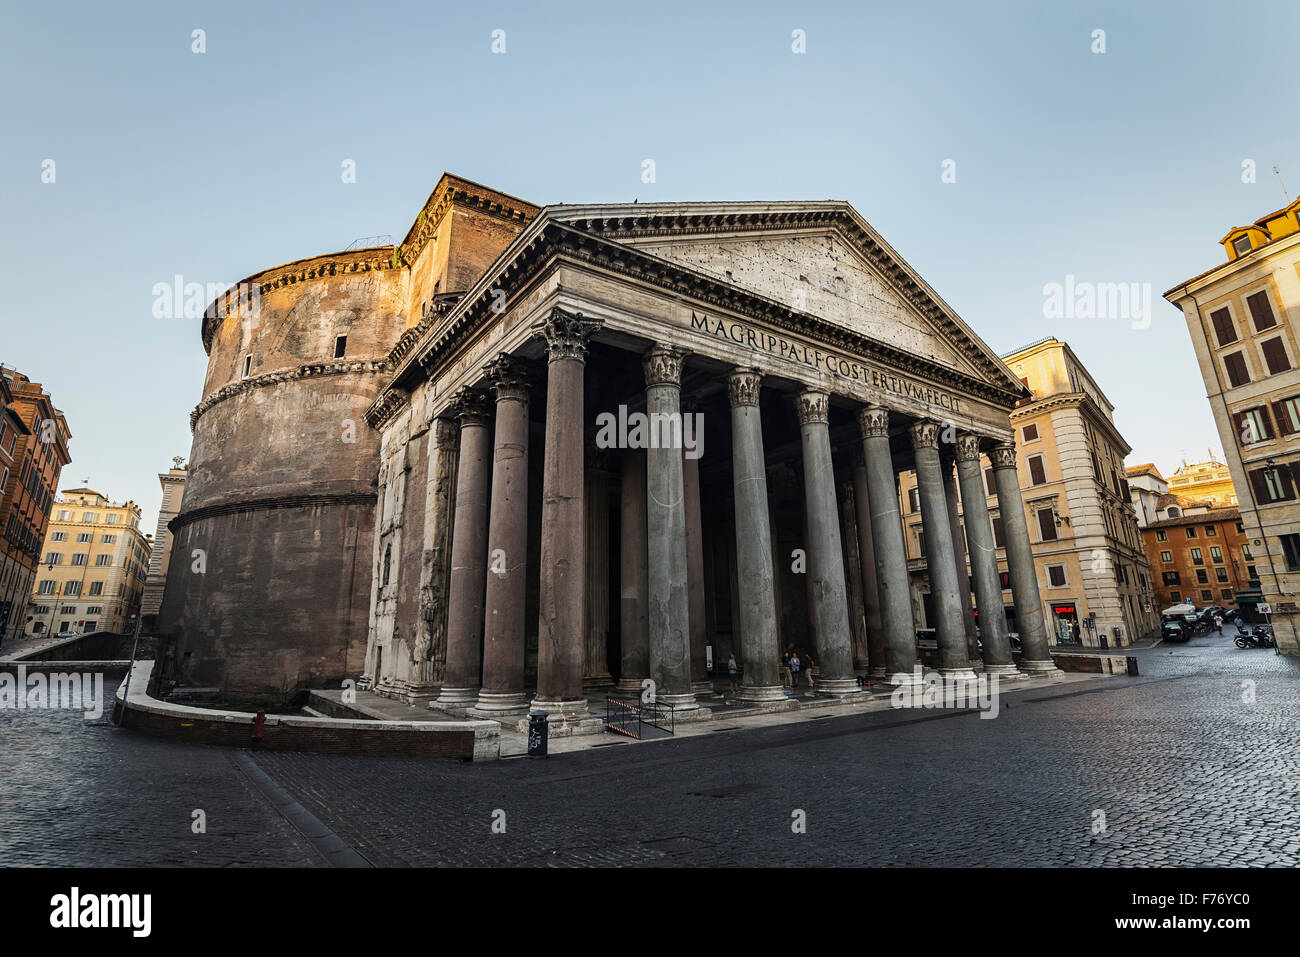 Pantheon at sunrise in Rome, Piazza della Rotonda Stock Photo